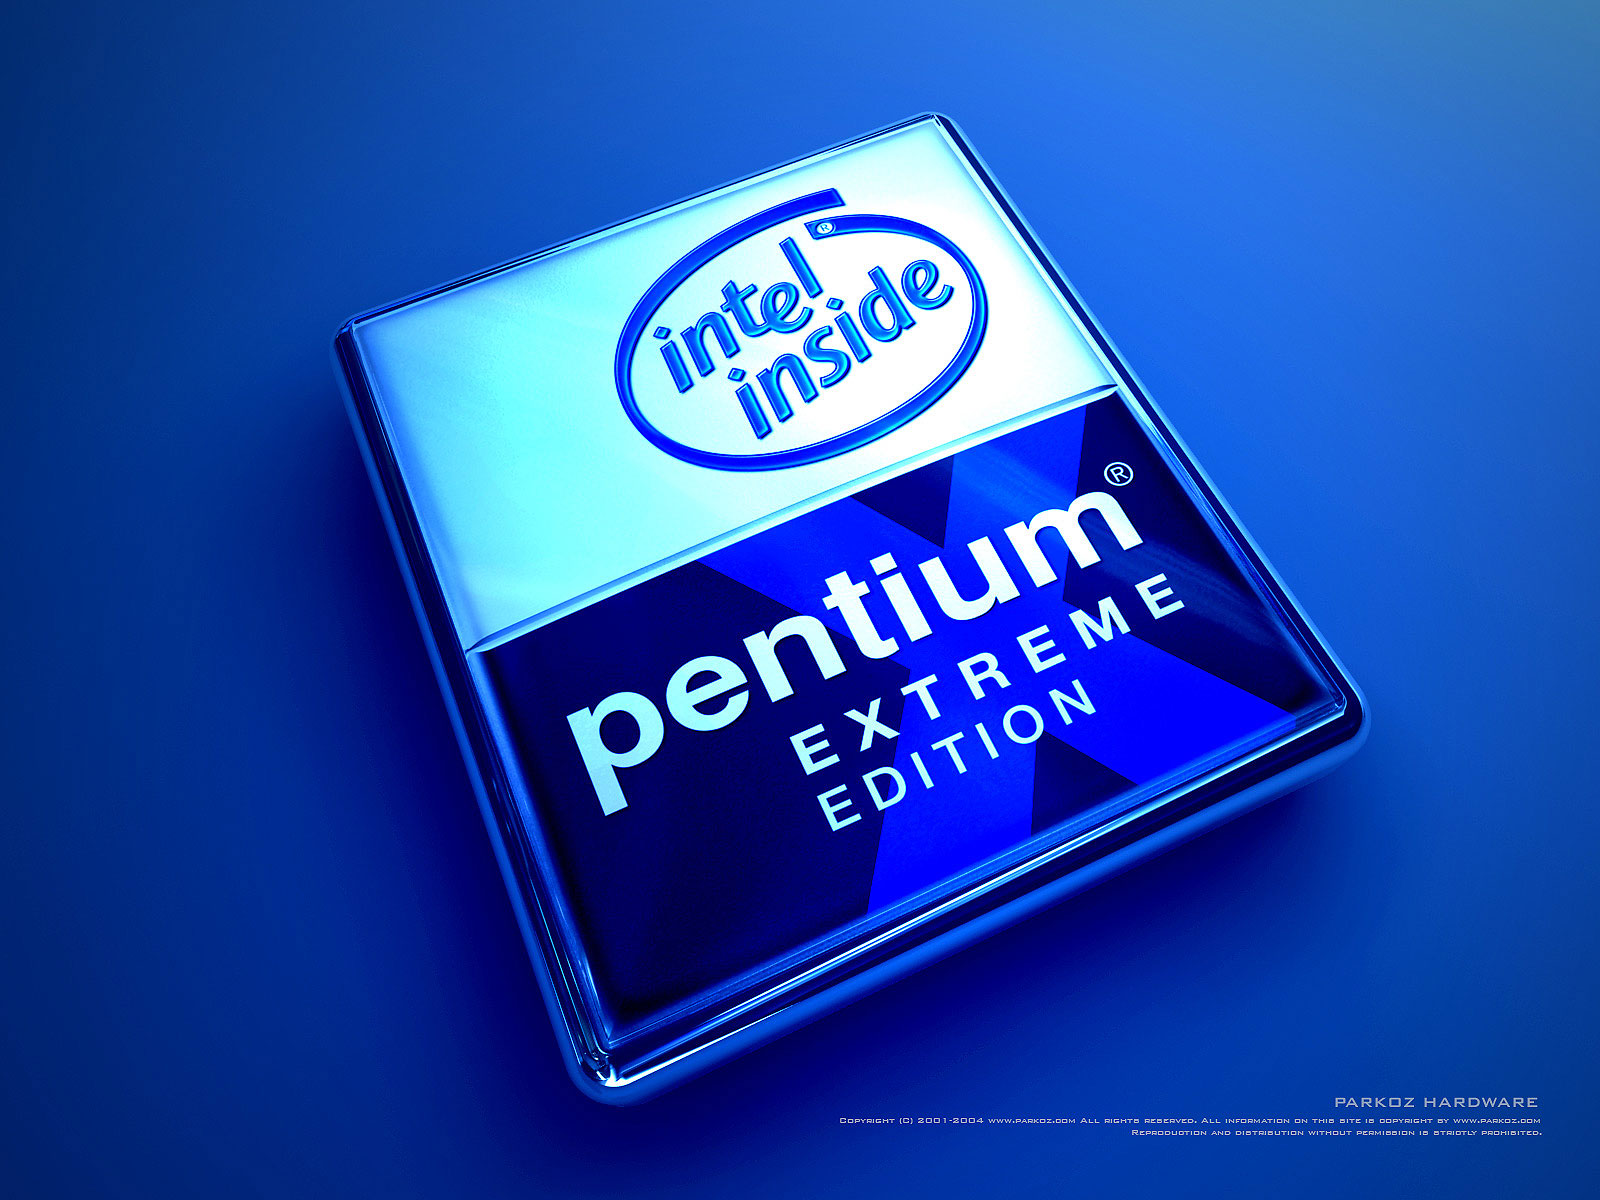 Intel com. Процессоры Intel inside Pentium Core Processor. Intel inside Pentium 4. Intel inside Pentium extreme Edition. Логотип Intel Pentium.